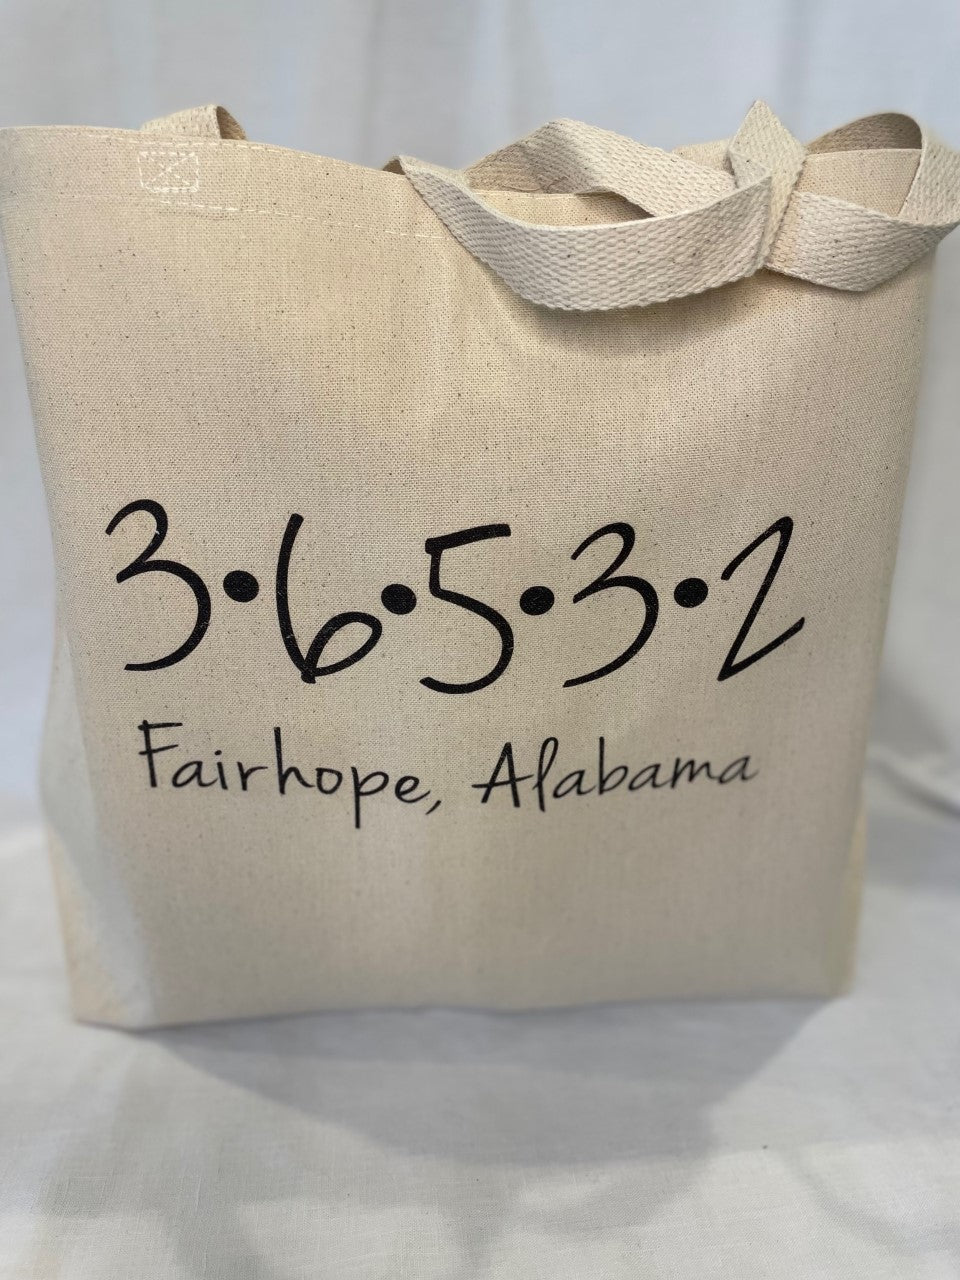 36532 Fairhope Alabama Tote Bag